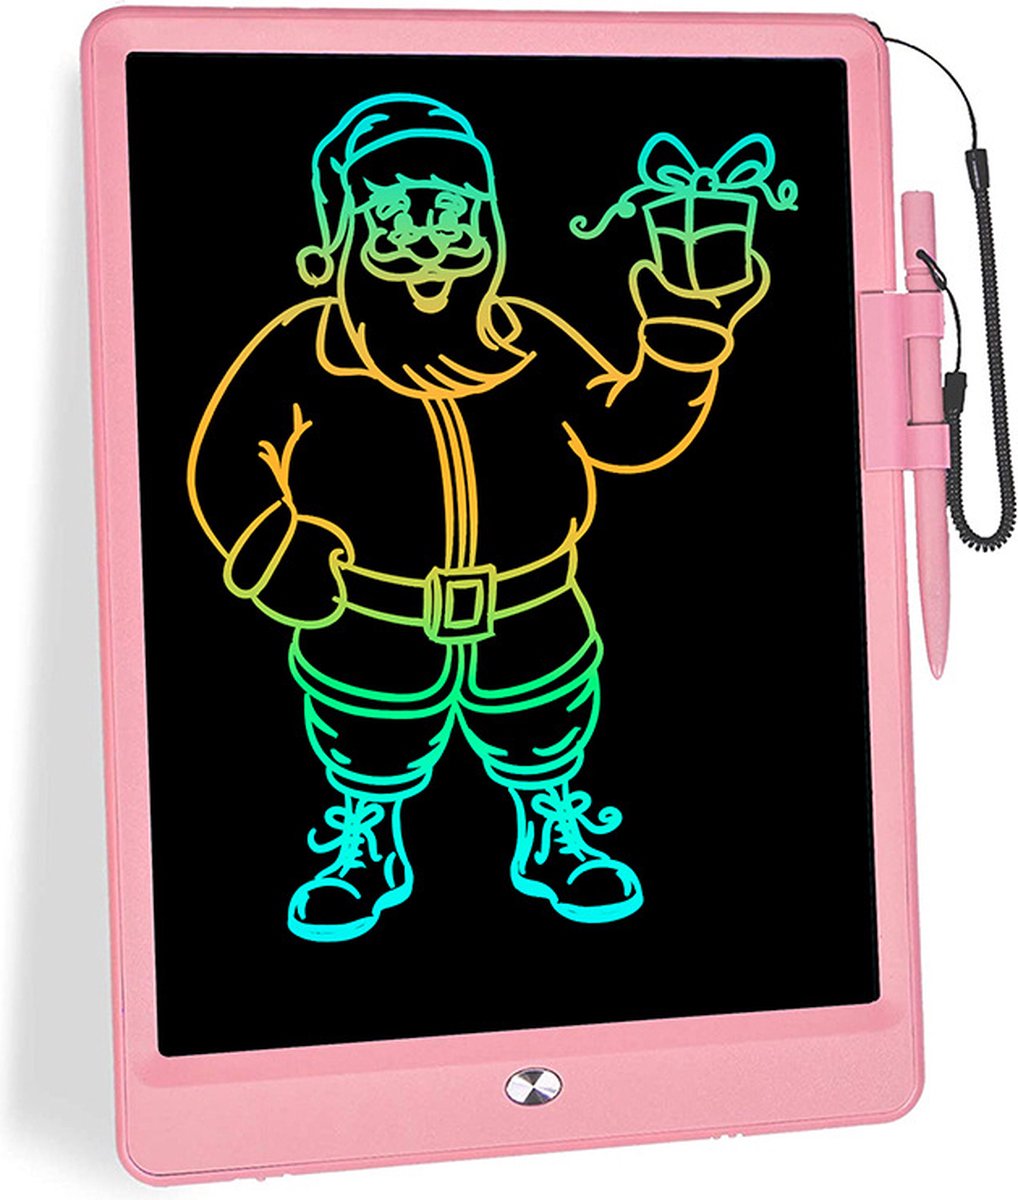 Kleurrijk schrijfbord-LCD 10 inch-Elektronisch LCD-Digitaal tekenbord-Grafische tablets-Chrijfbord, kinderspeelgoed voor volwassenen-Roze-Tekenblok Met Kleurrijk Scherm-Schrijfbord-Educatief Speelgoed-Leerbord